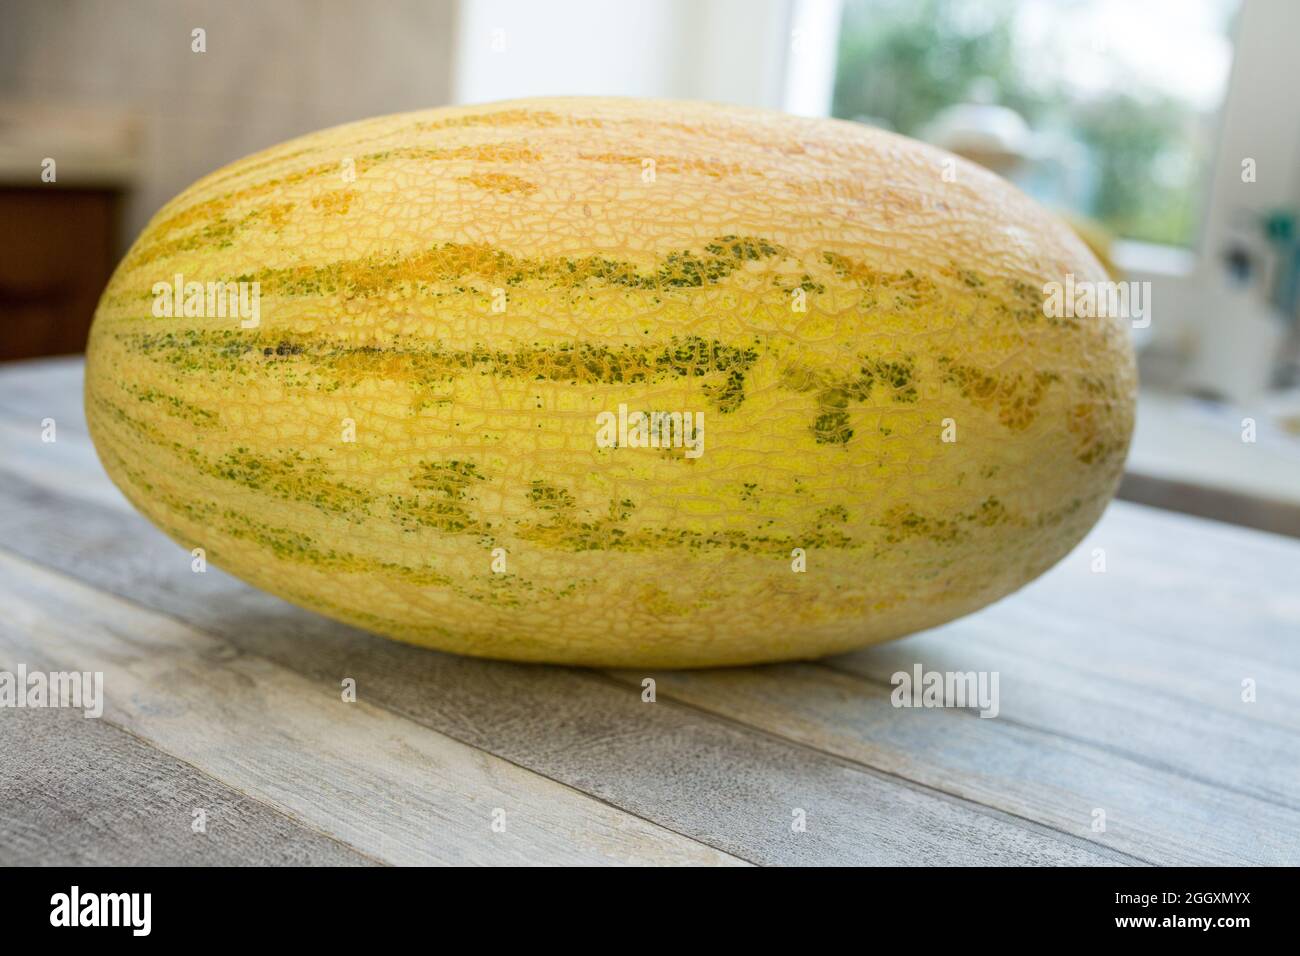 Eine ganze Melone auf dem Tisch. Lieblingsfrucht im Sommer. Essen, Obst oder gesunde Ernährung Konzept. Stockfoto